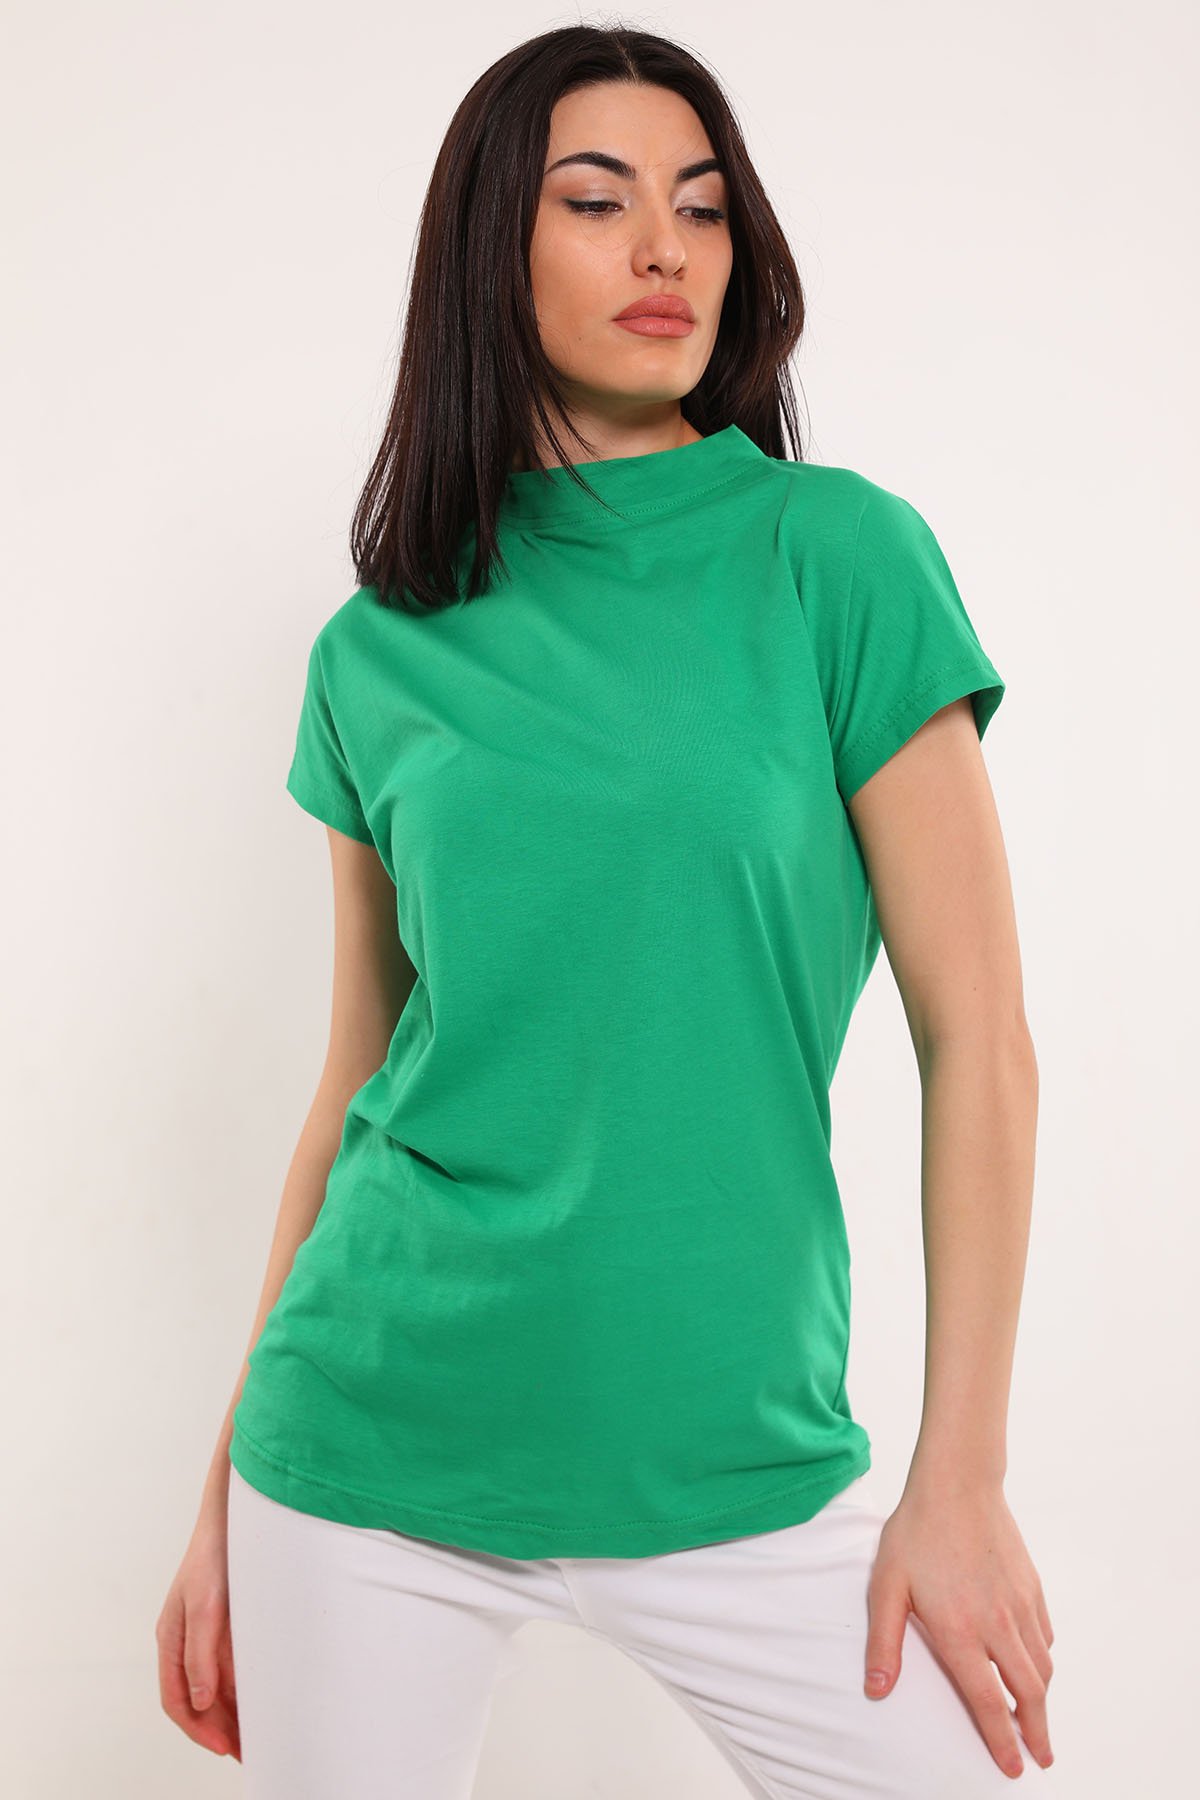 Kadın Basic T-shirt Yeşil 497278 - tozlu.com